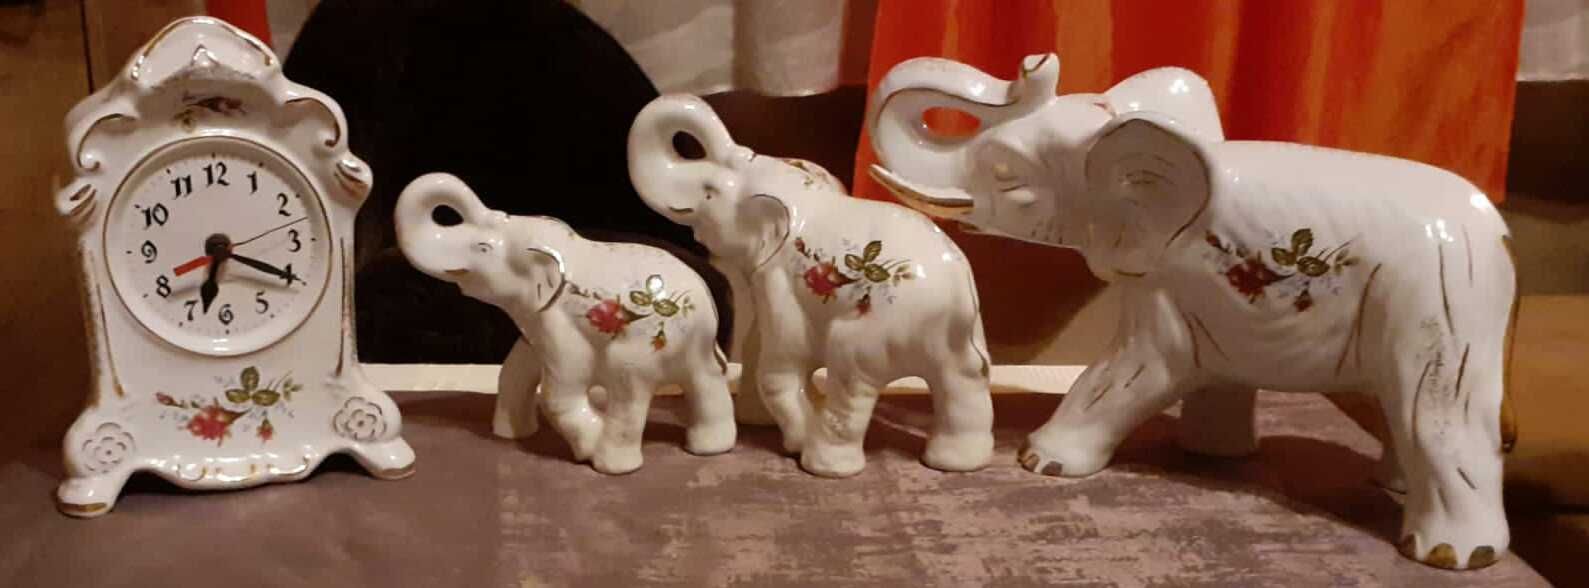 Słonie porcelanowe